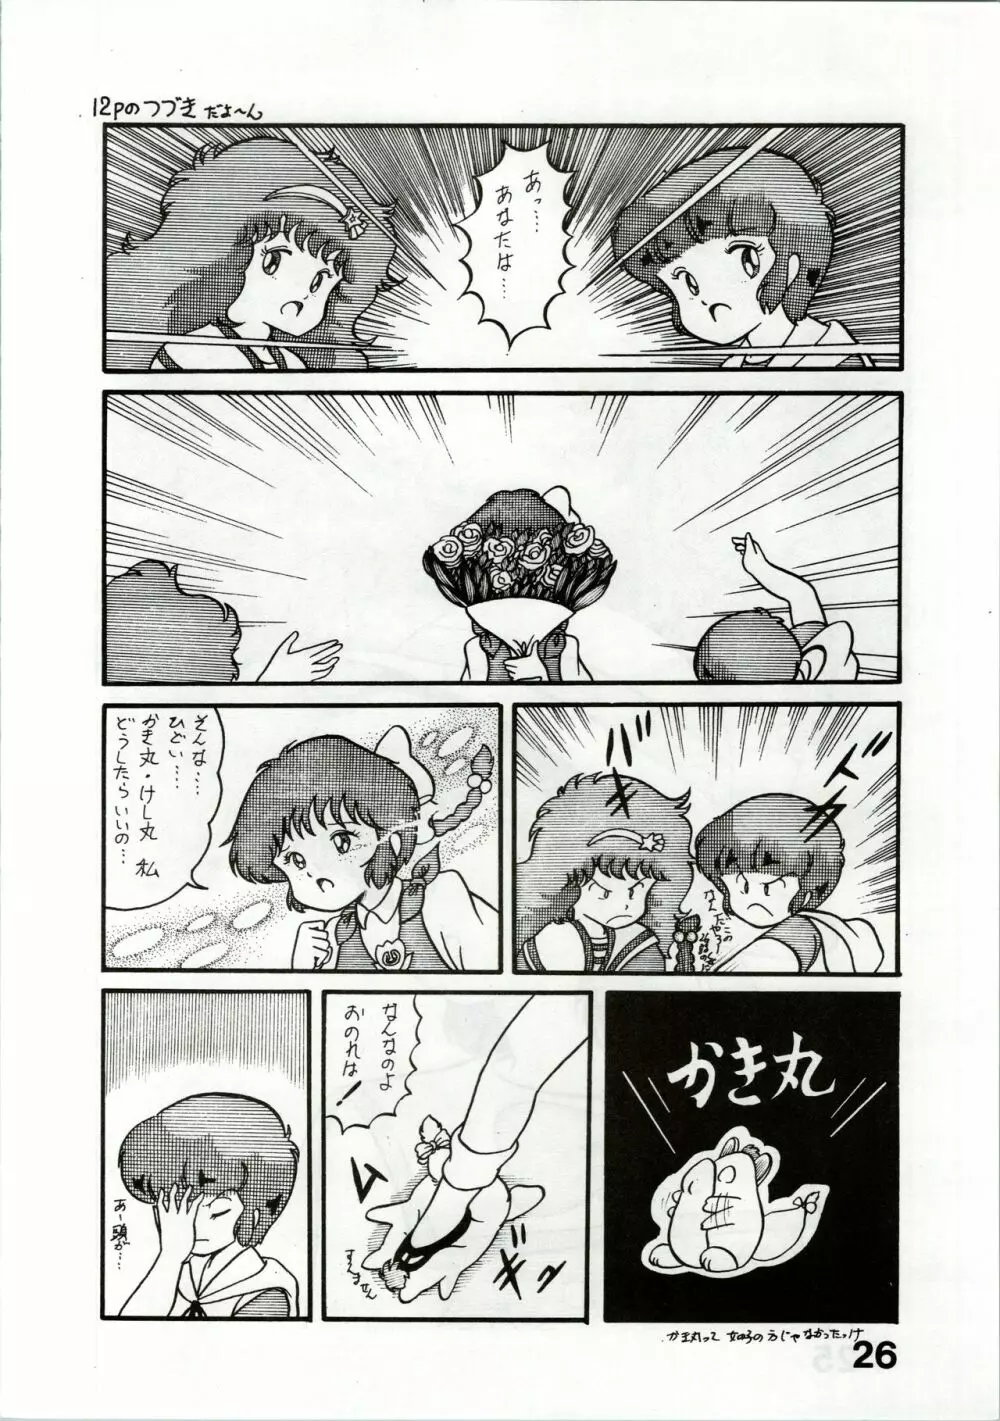 Magical Ponポンぽん 2 26ページ